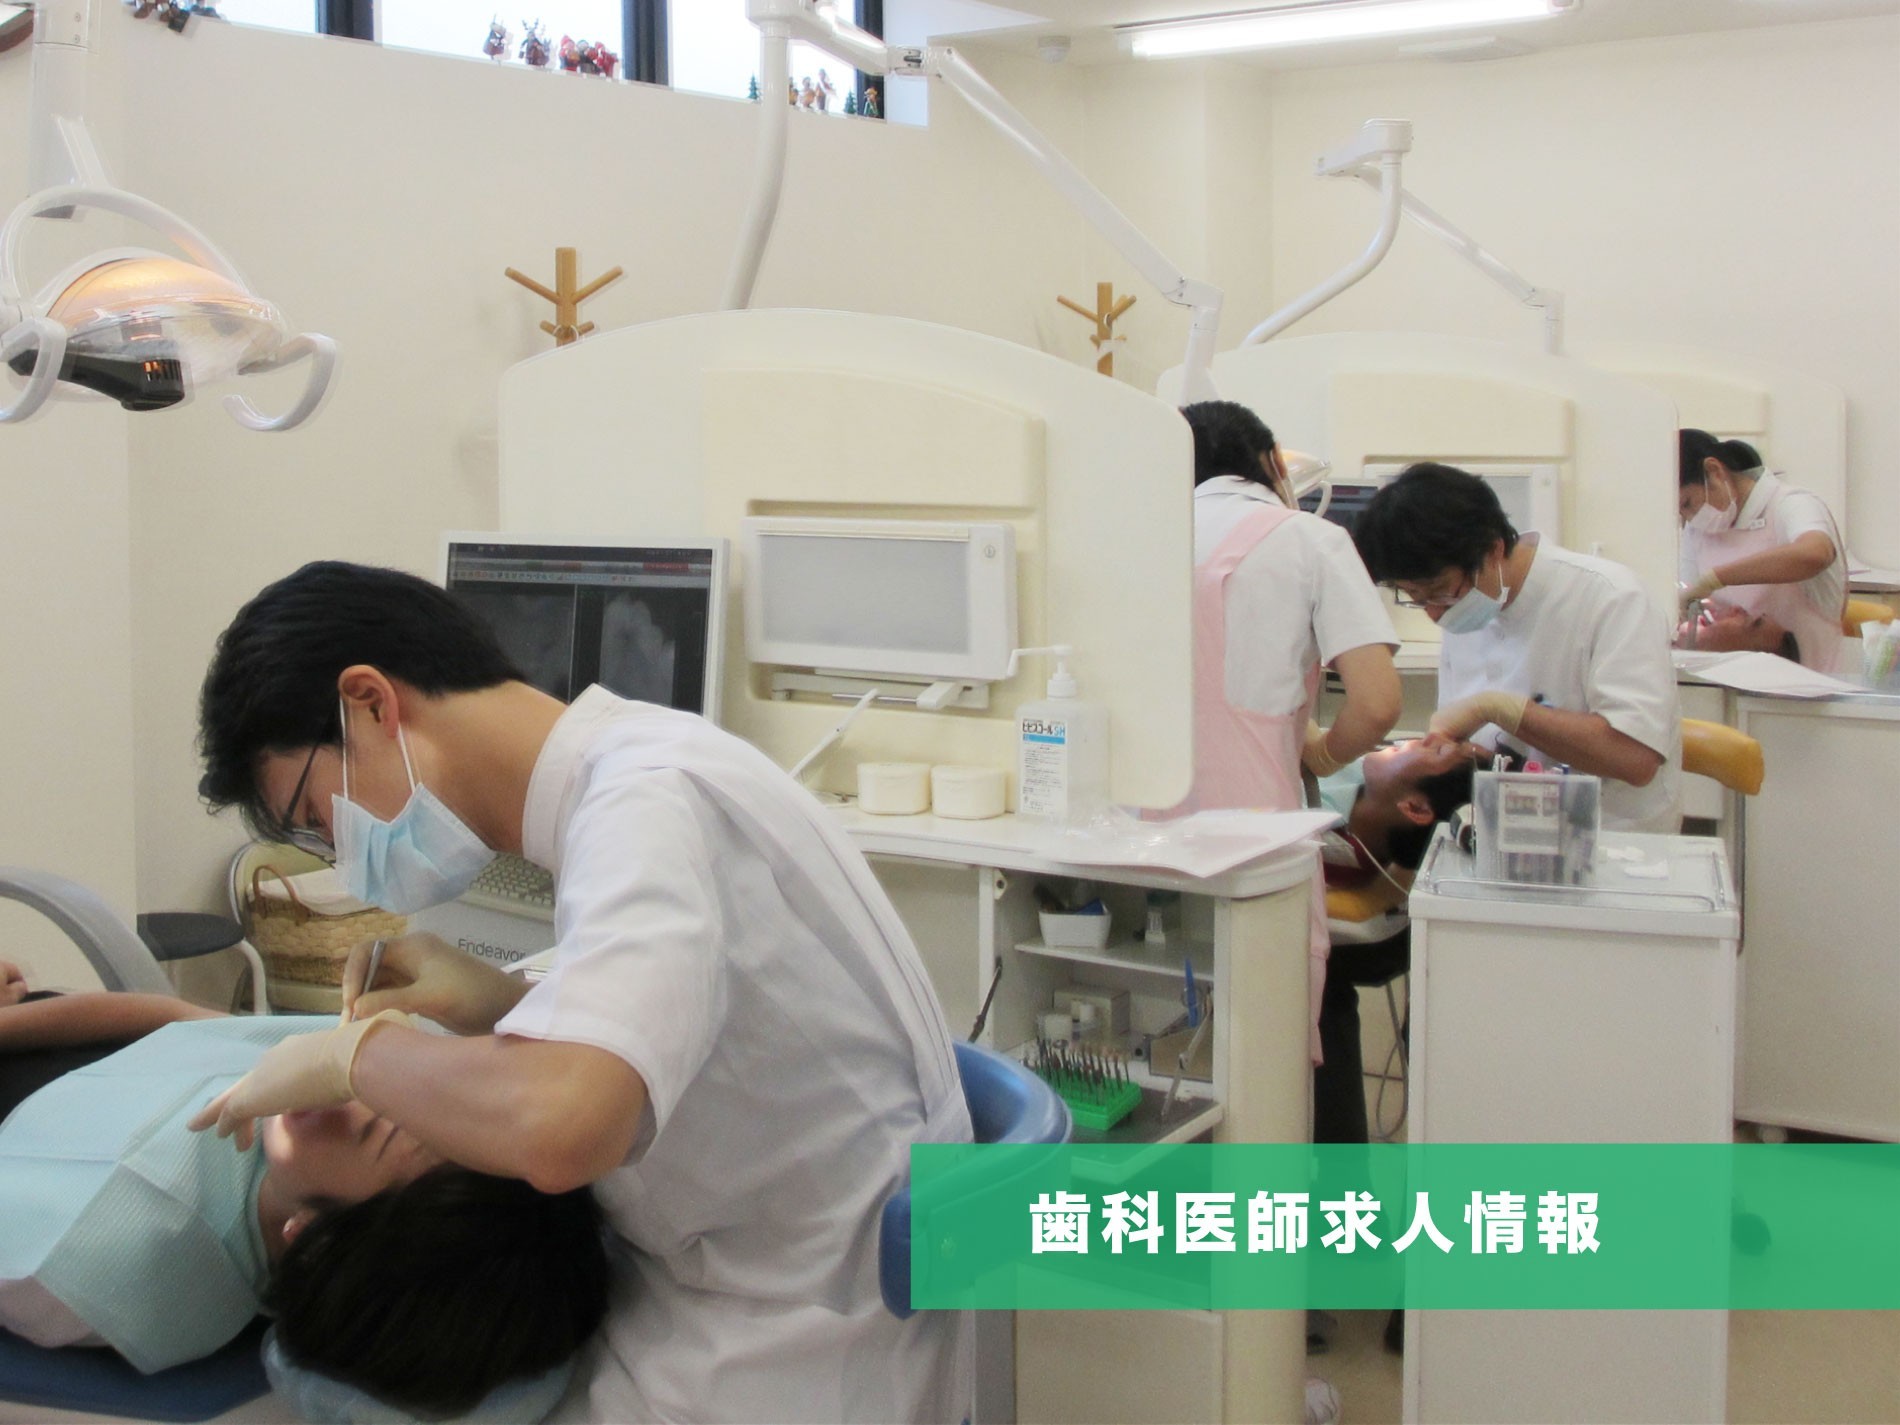 大阪で歯科医師の求人なら摂津市のはやみず歯科へ